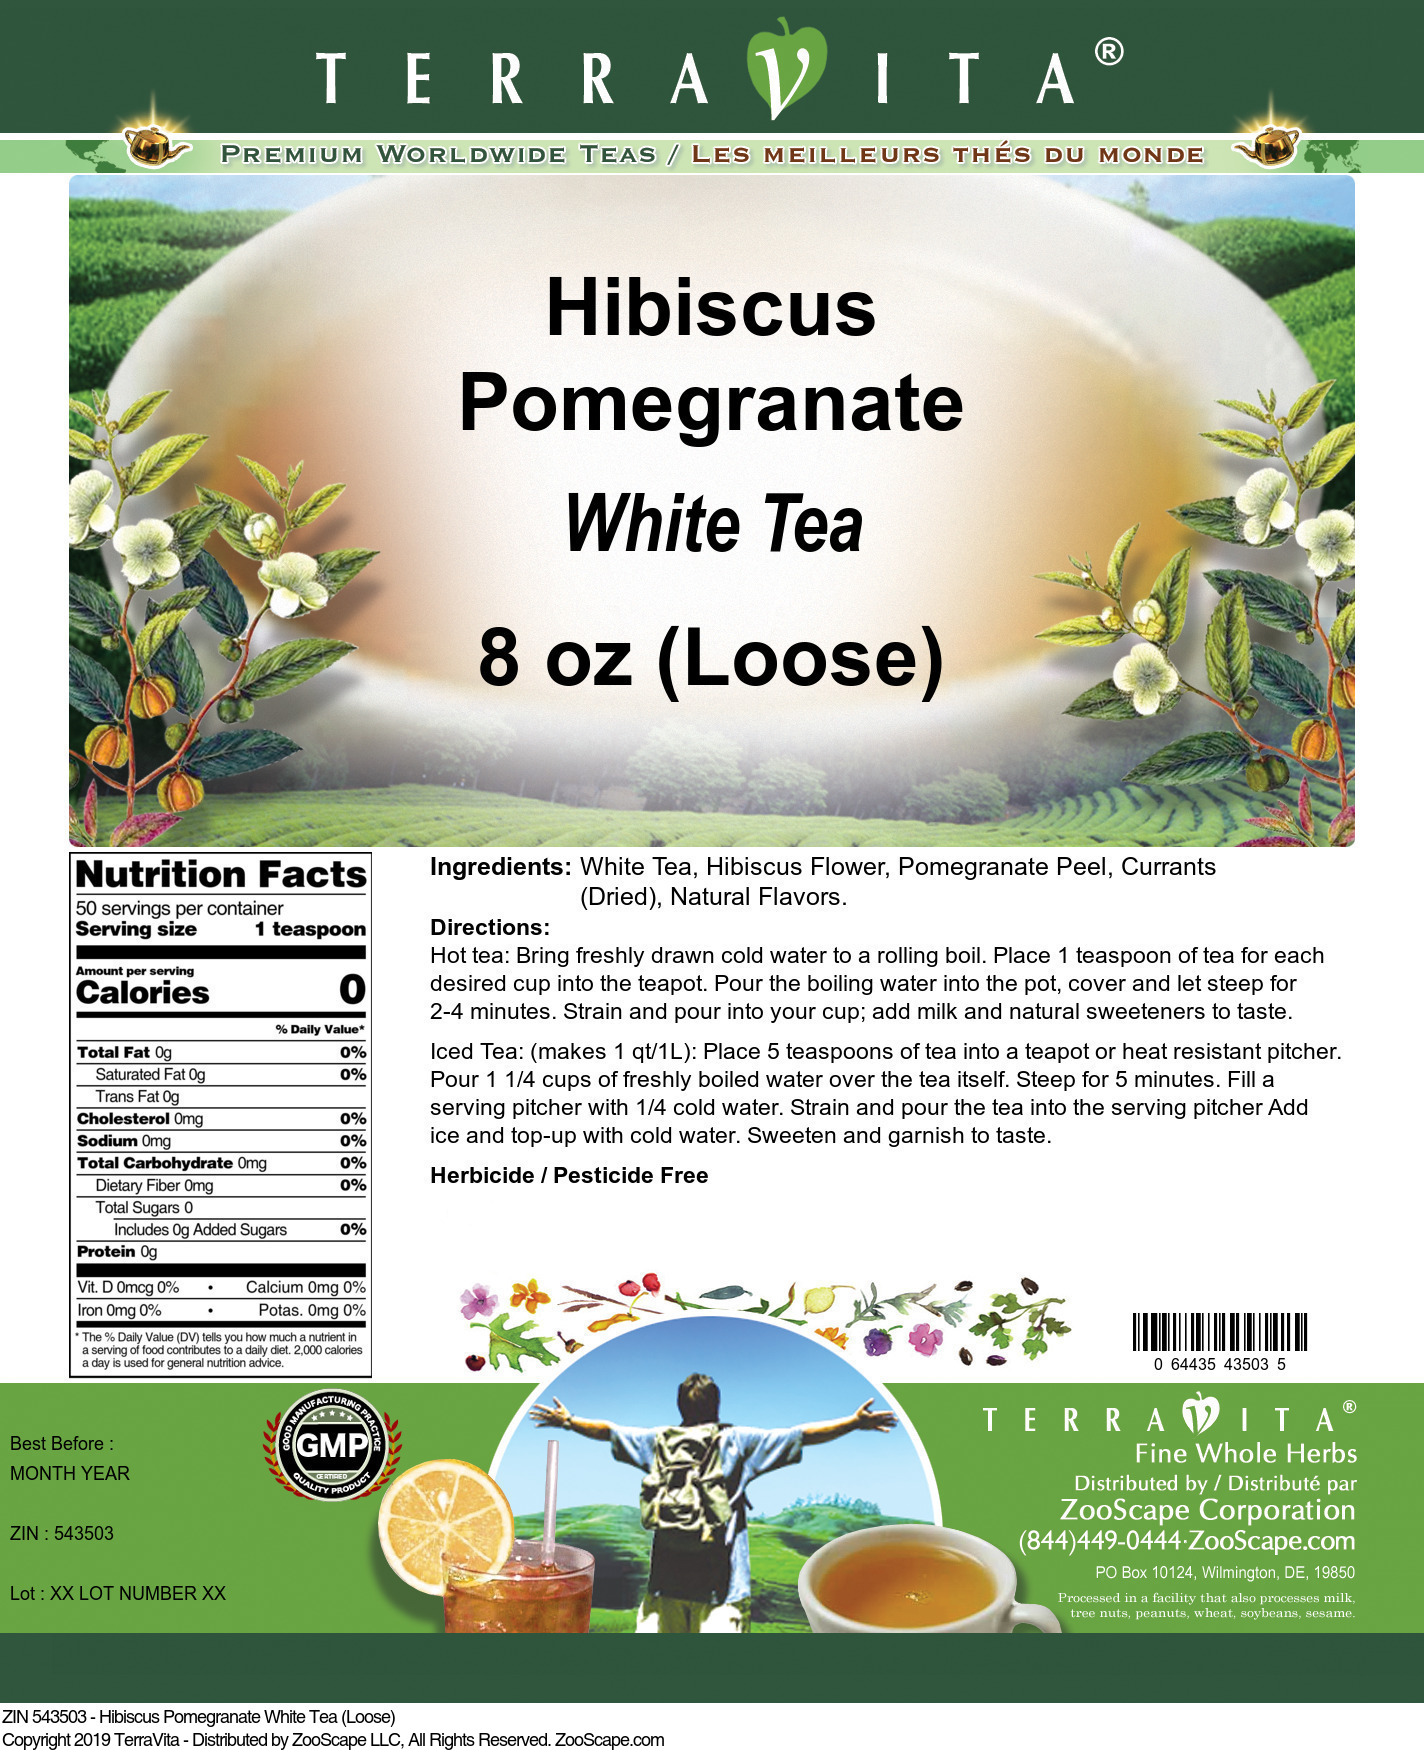 Hibiscus Pomegranate White Tea (Loose) - Label